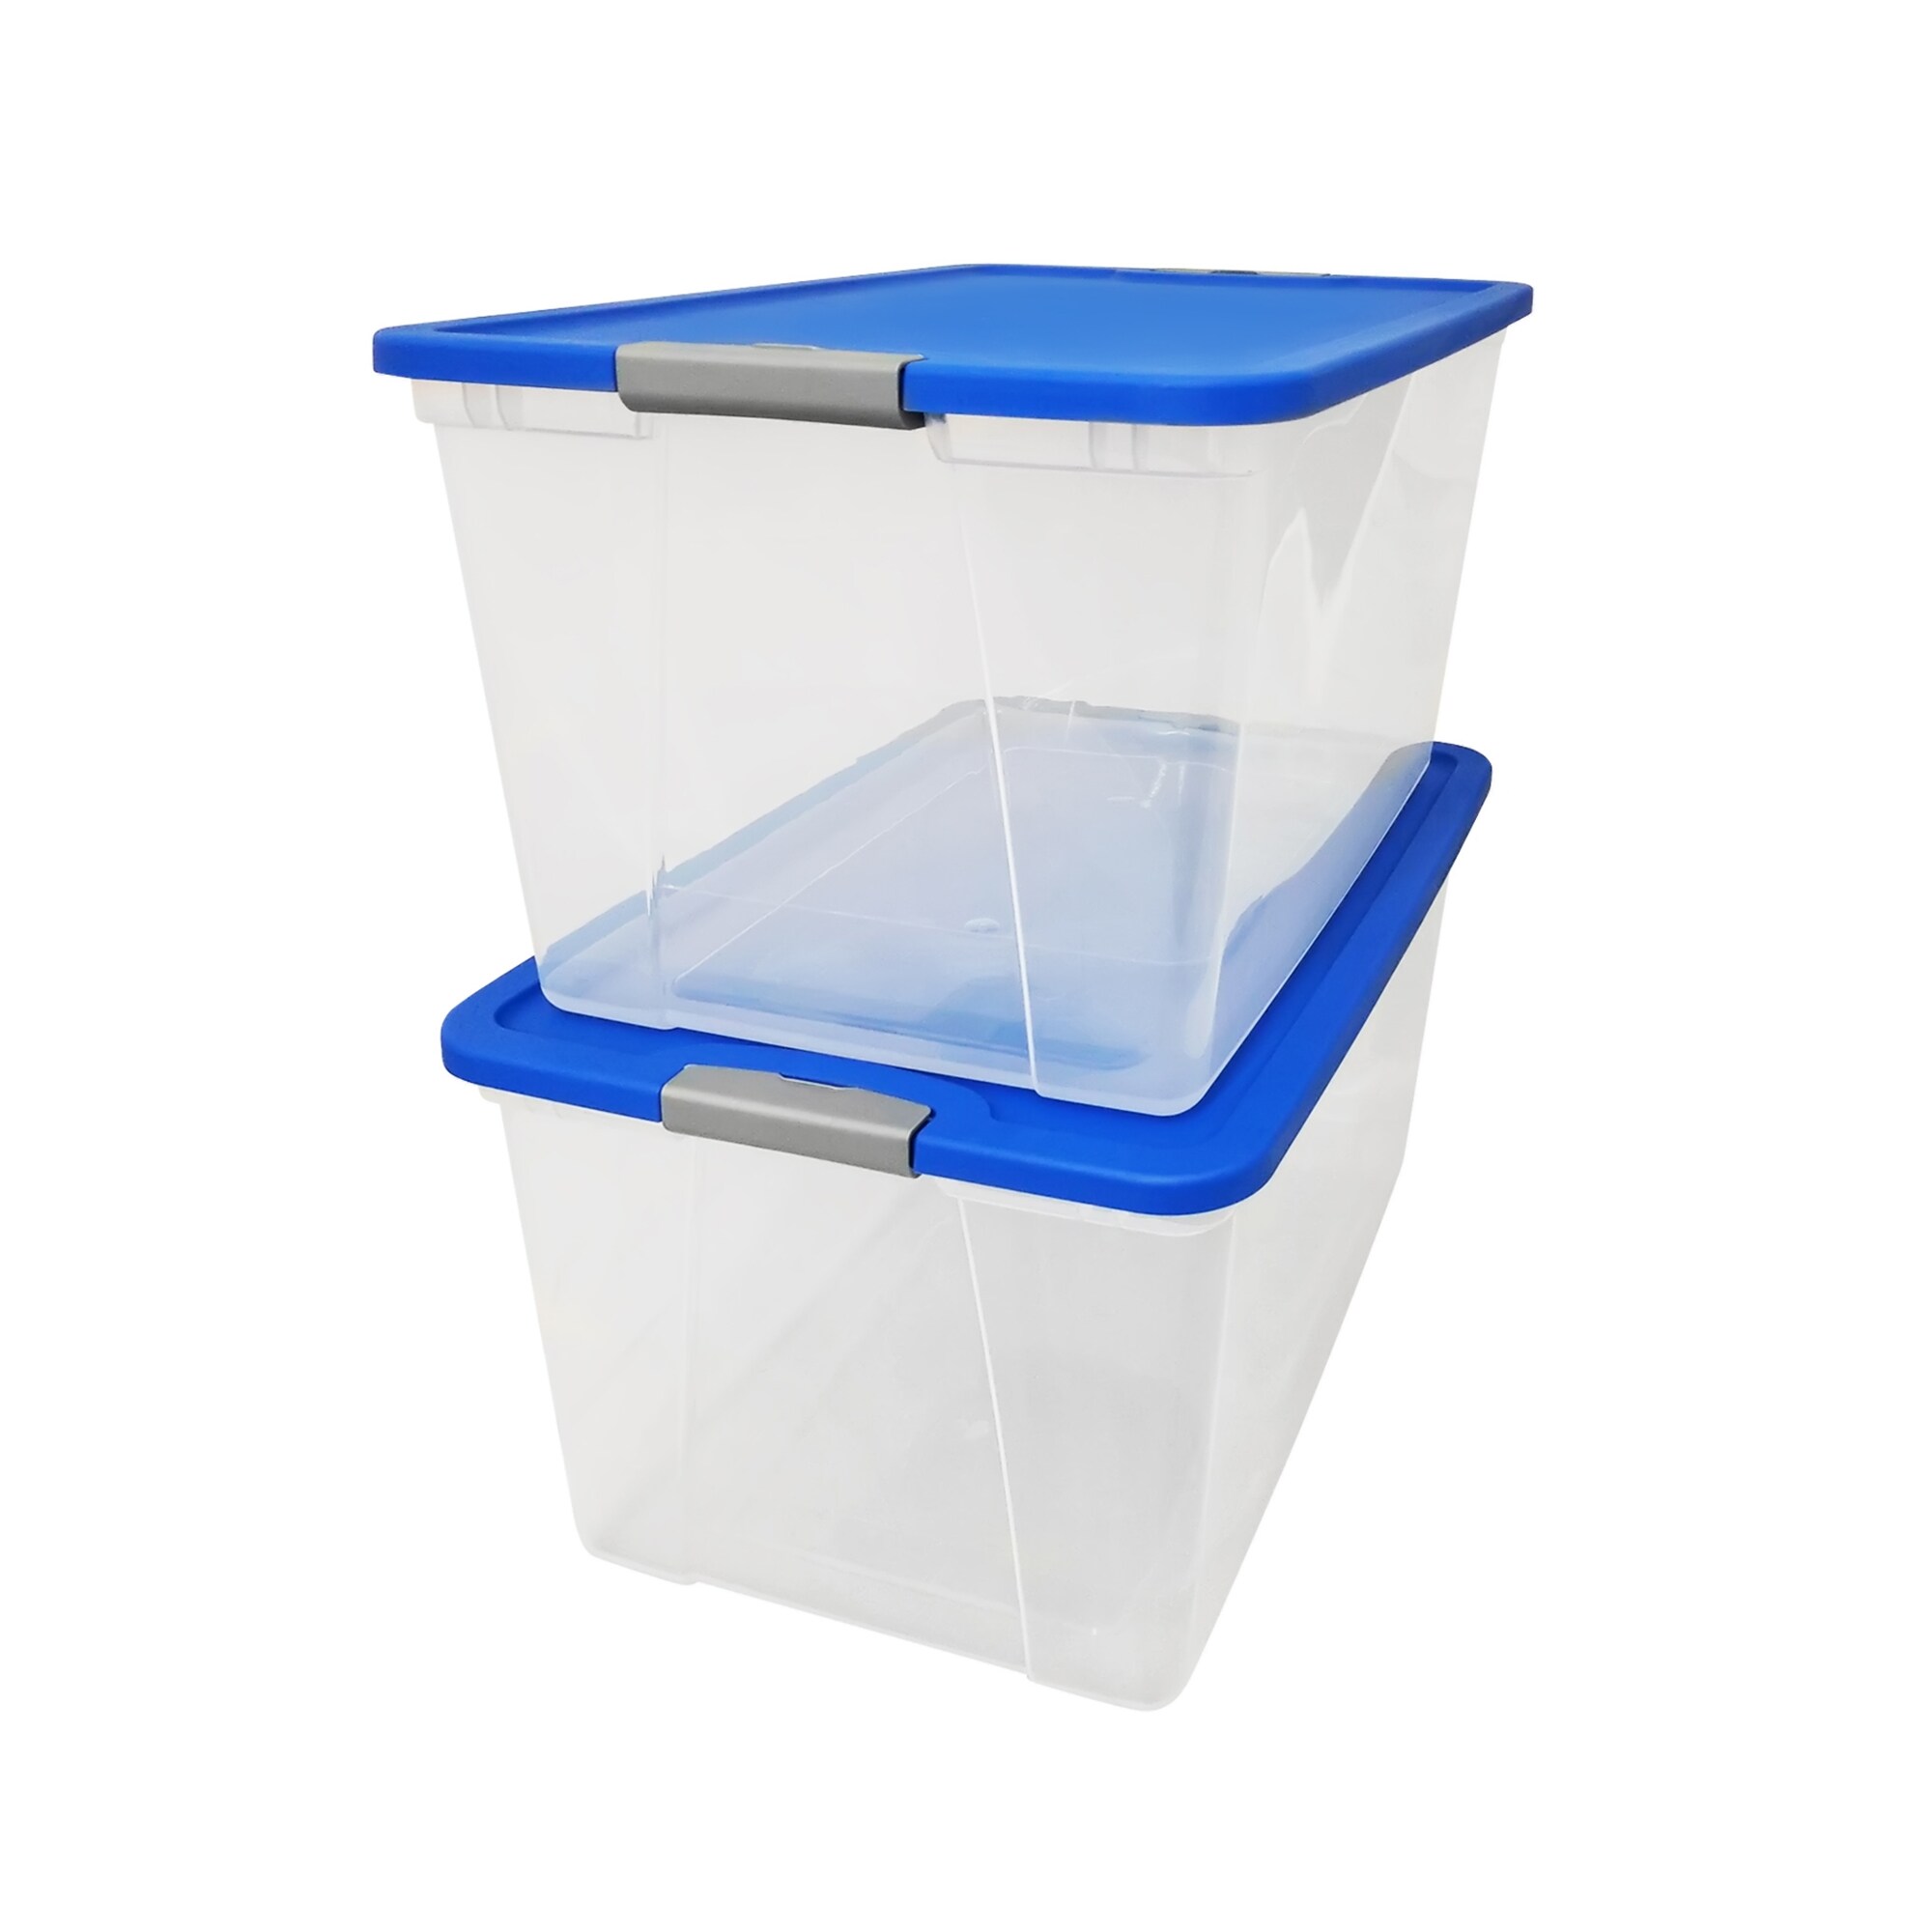 Homz Plastic Underbed Storage, Stackable Storage Bins with Blue